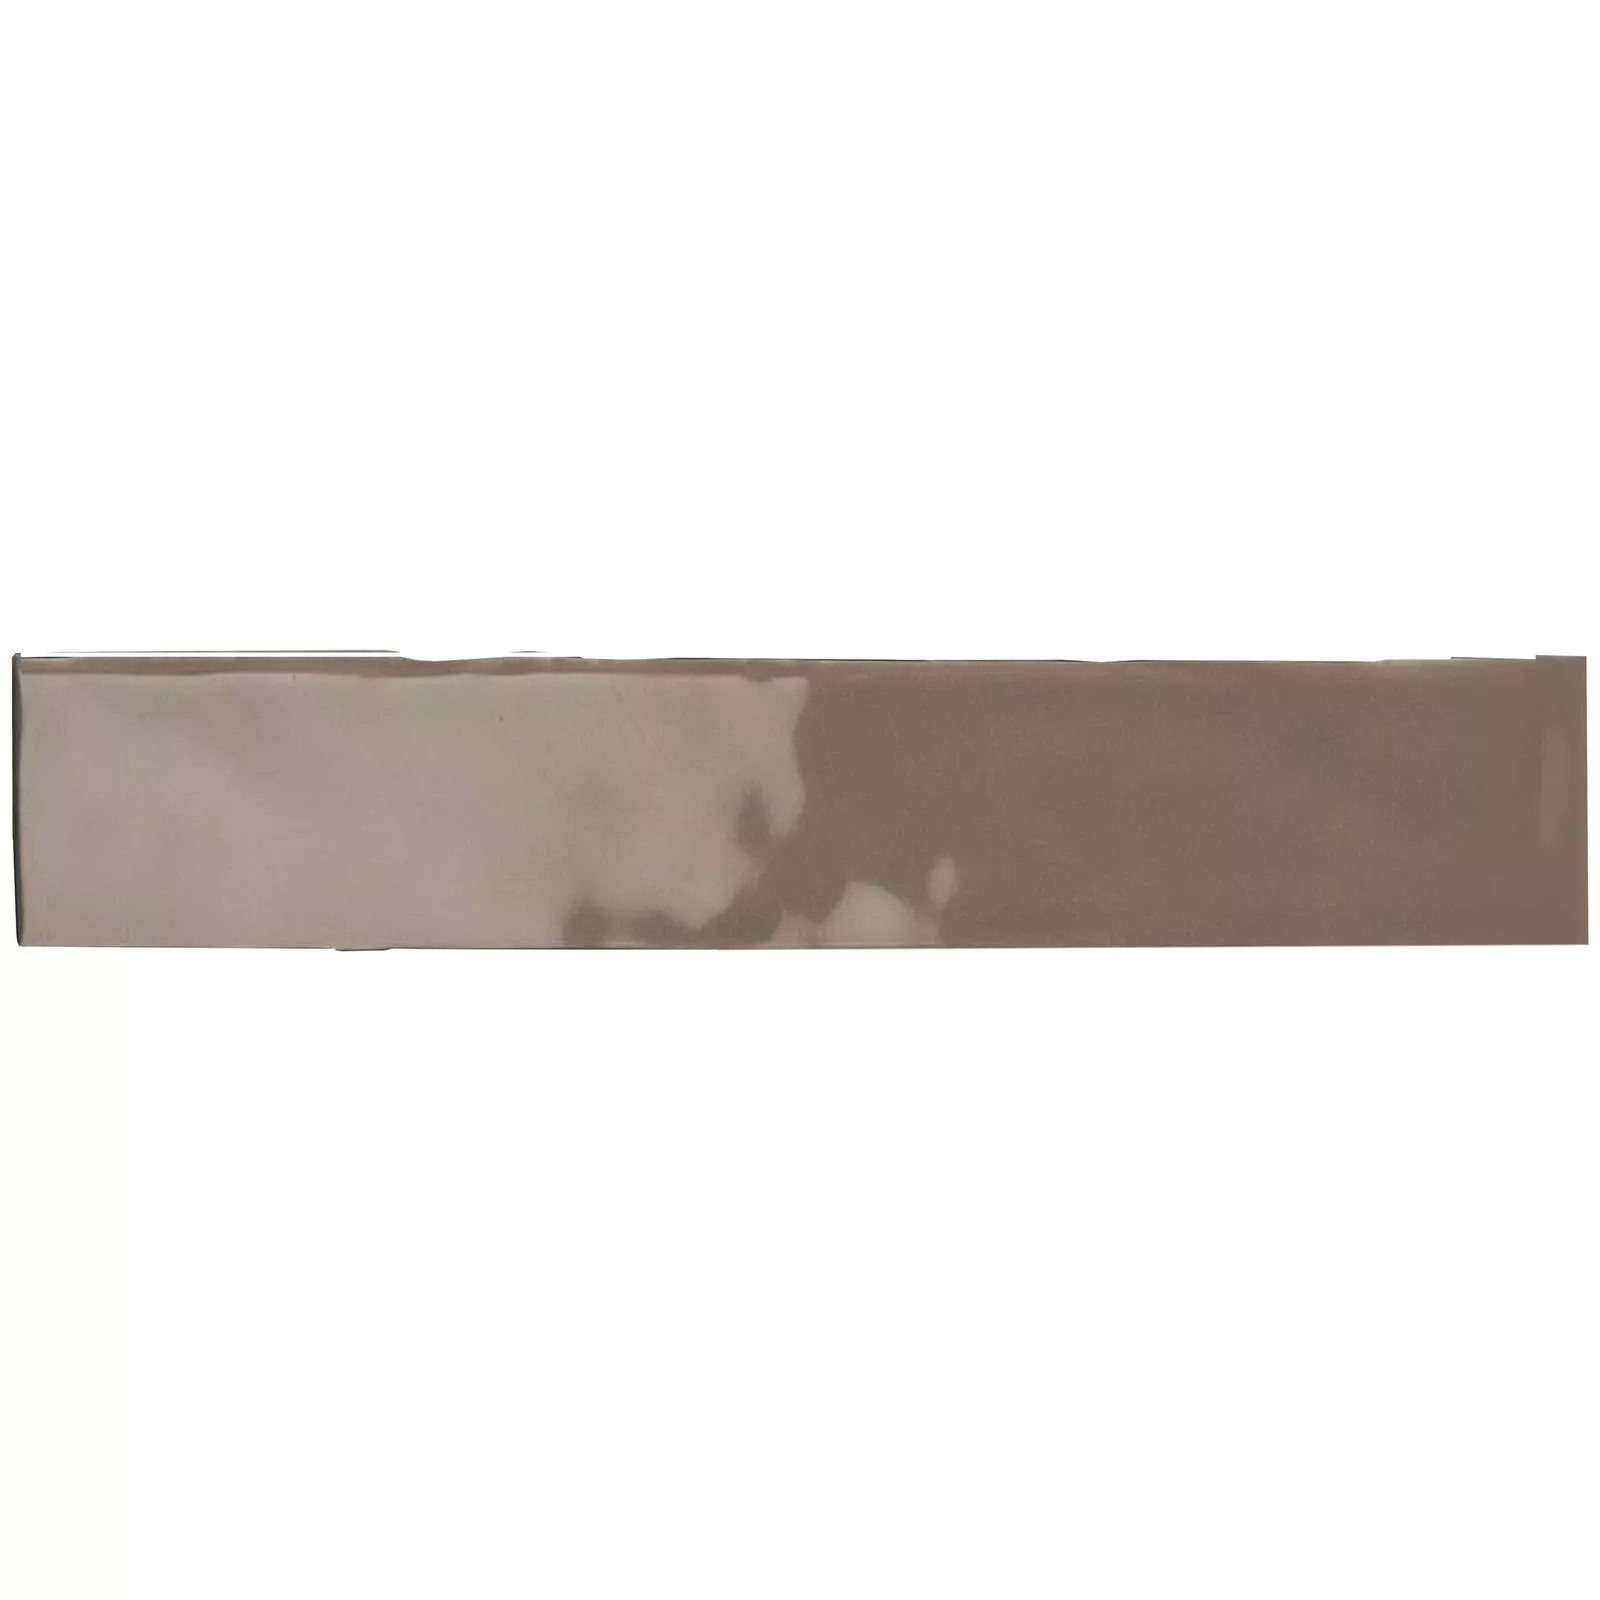 Próbka Płytki Ścienne Montreal Karbowany Ciemnobrązowy 5x25cm